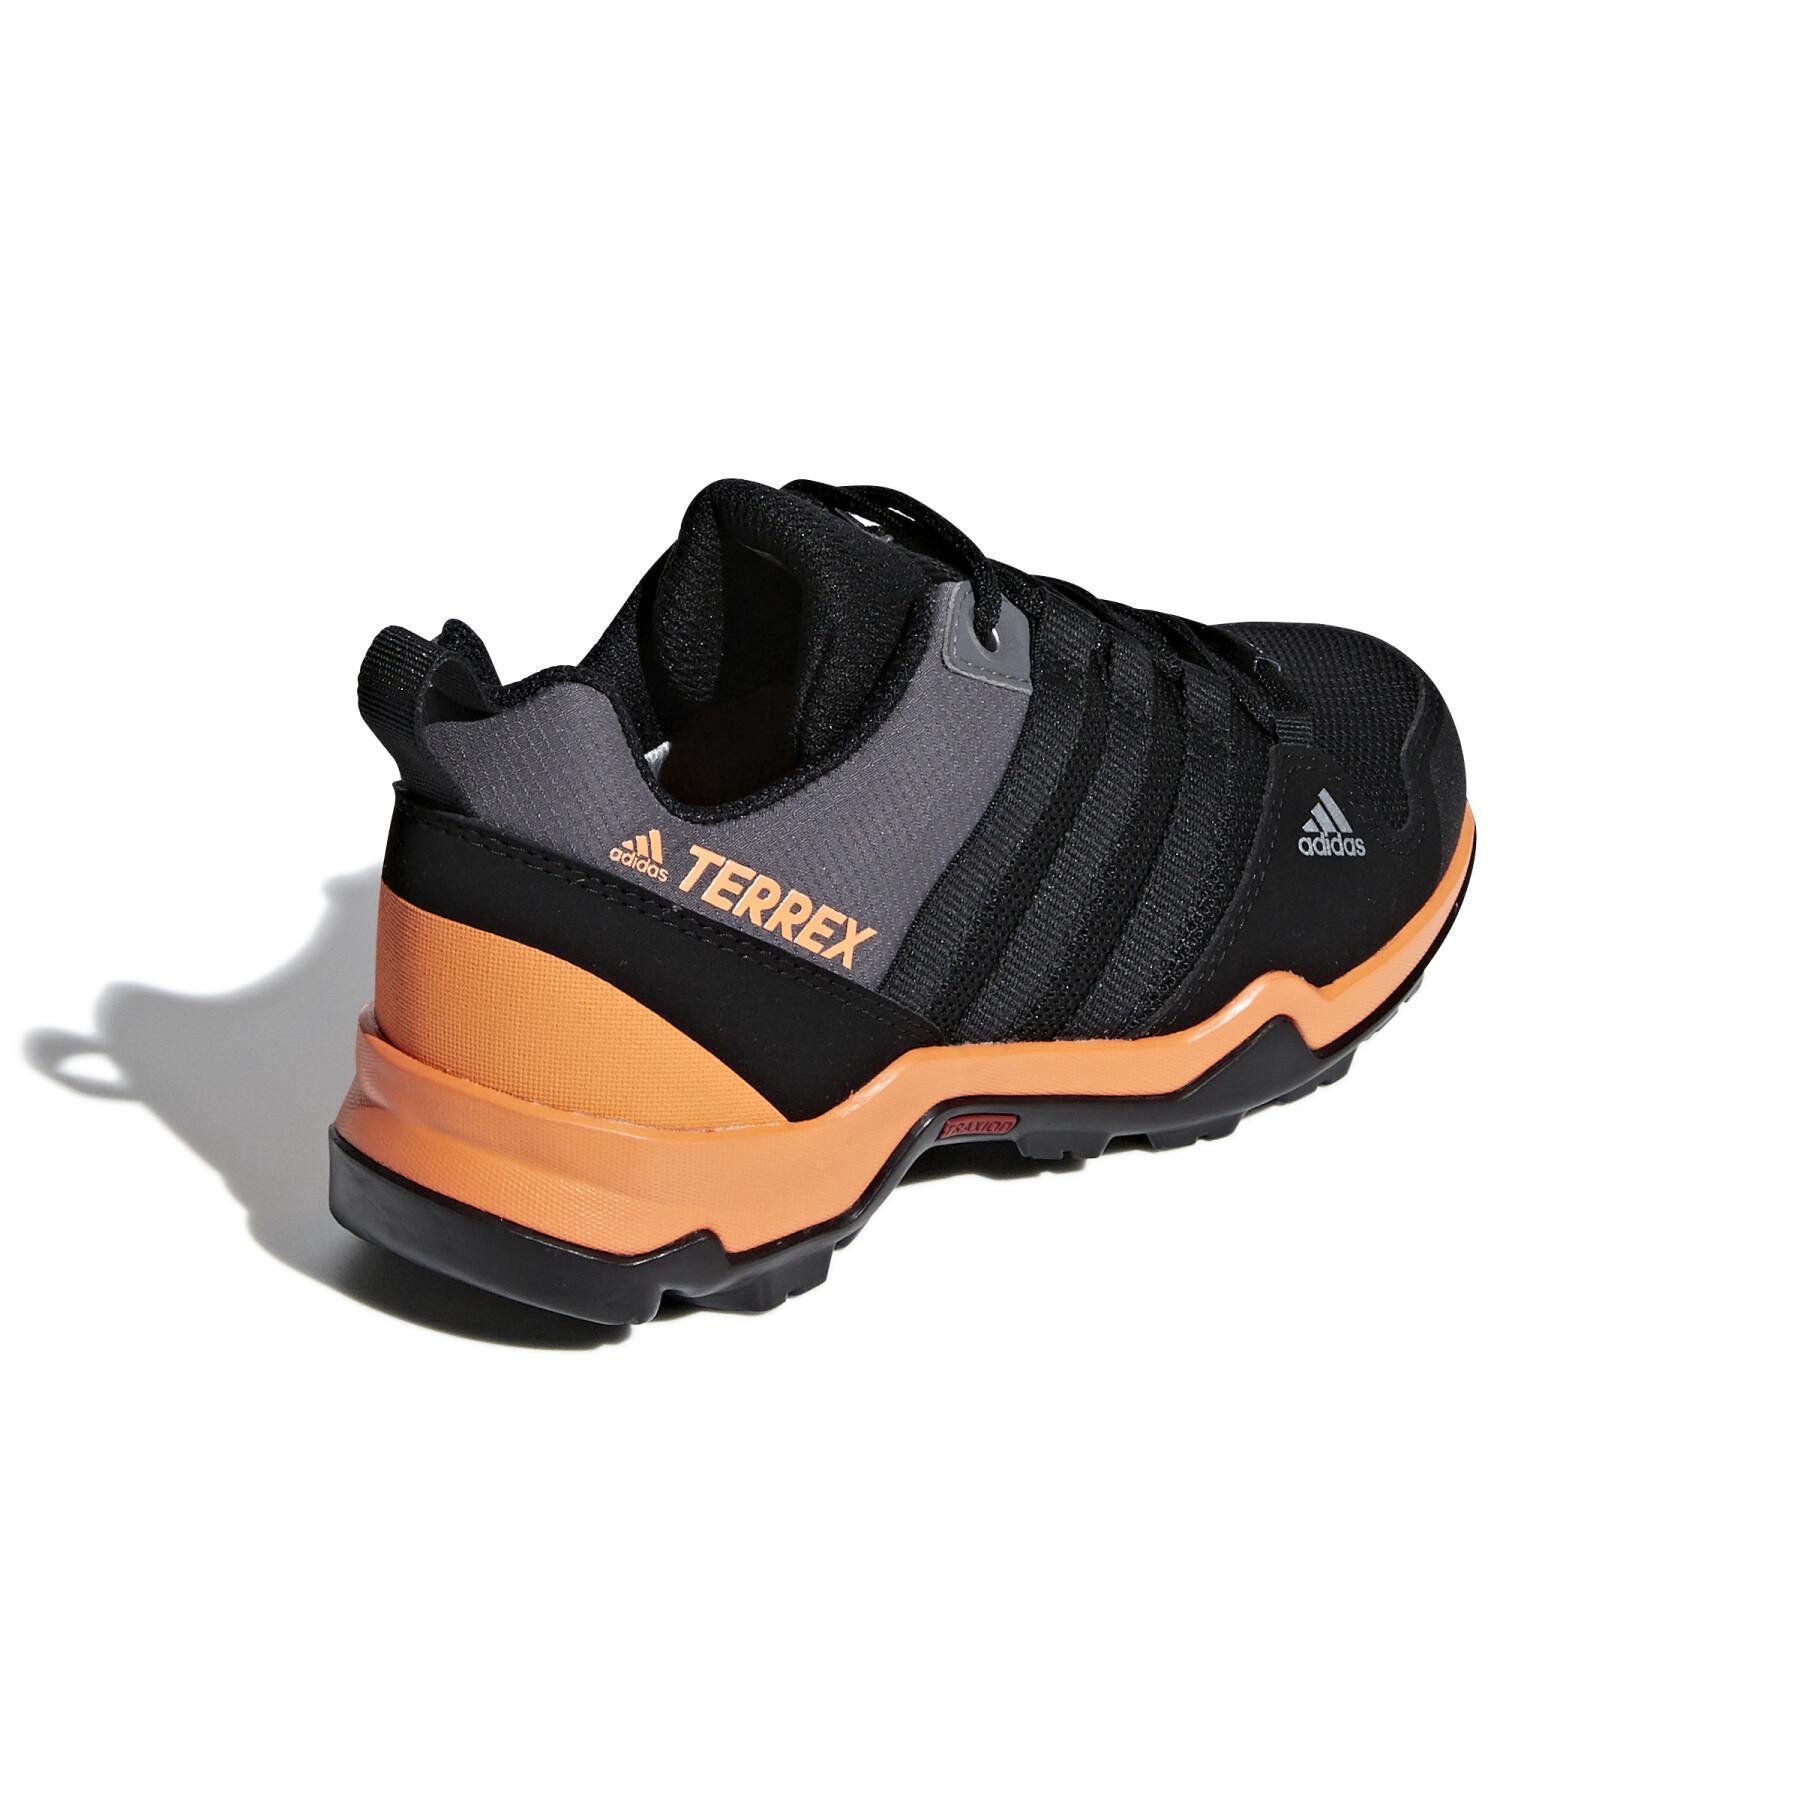 Chaussures de randonnée enfant adidas AX2R ClimaProof